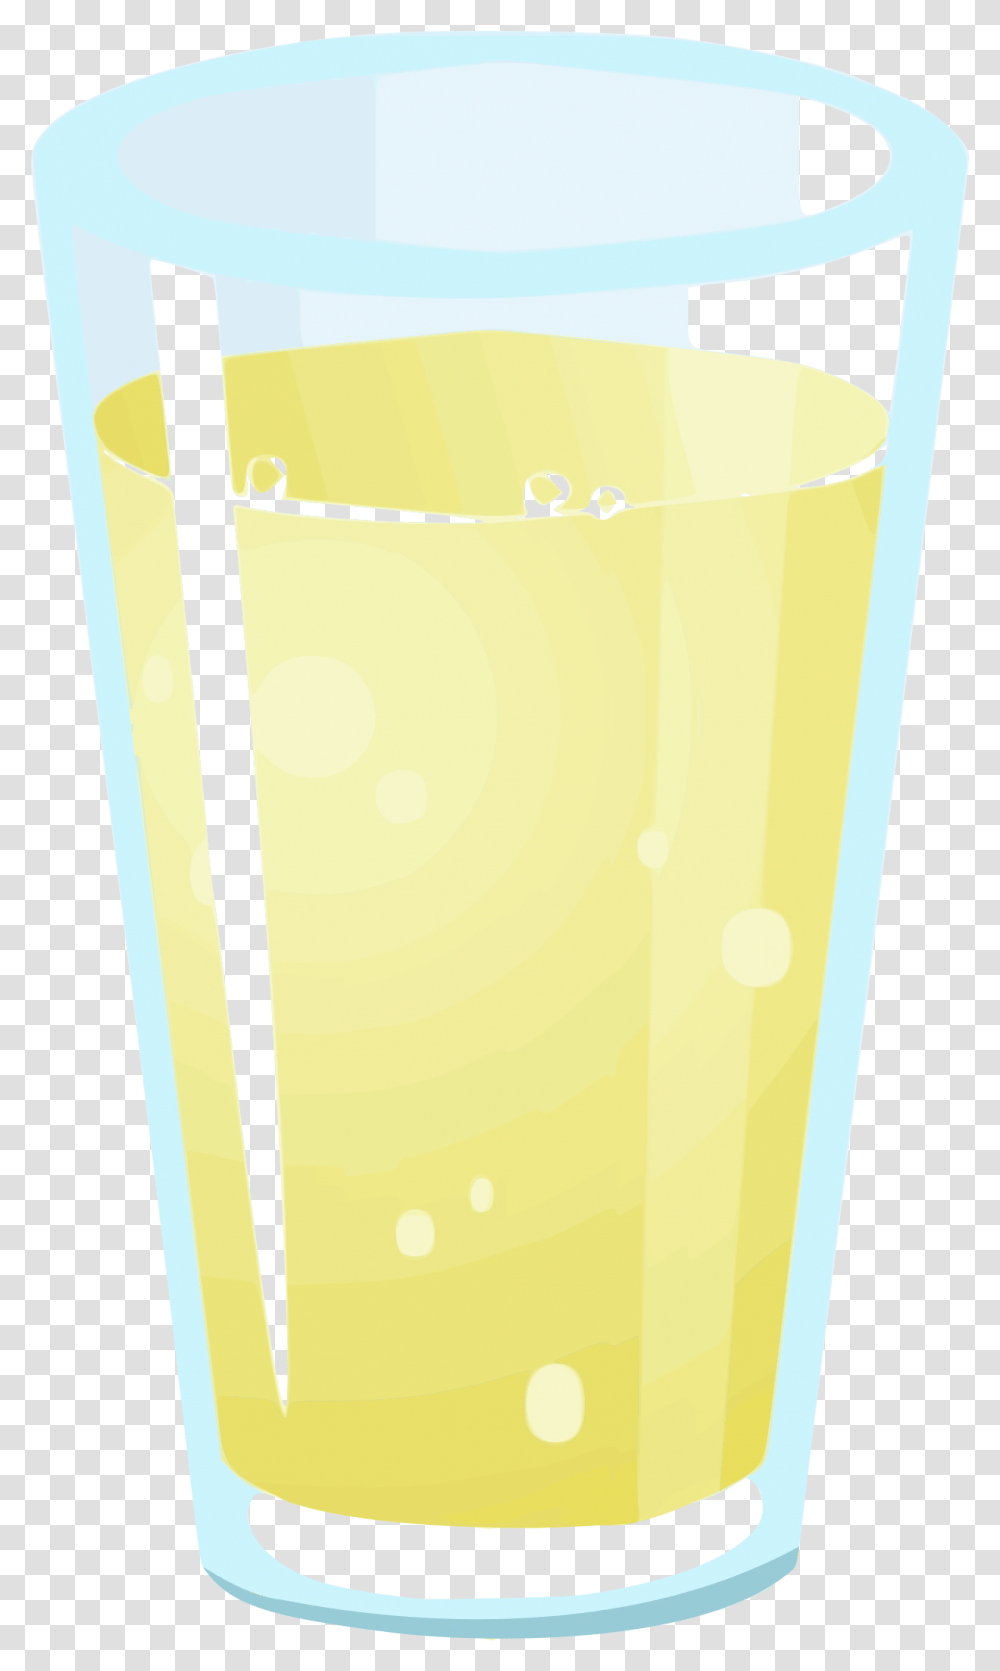 Harvey Wallbangerorange Juicecup Lemon Juice Clipart, Beverage, Drink, Glass, Bottle Transparent Png